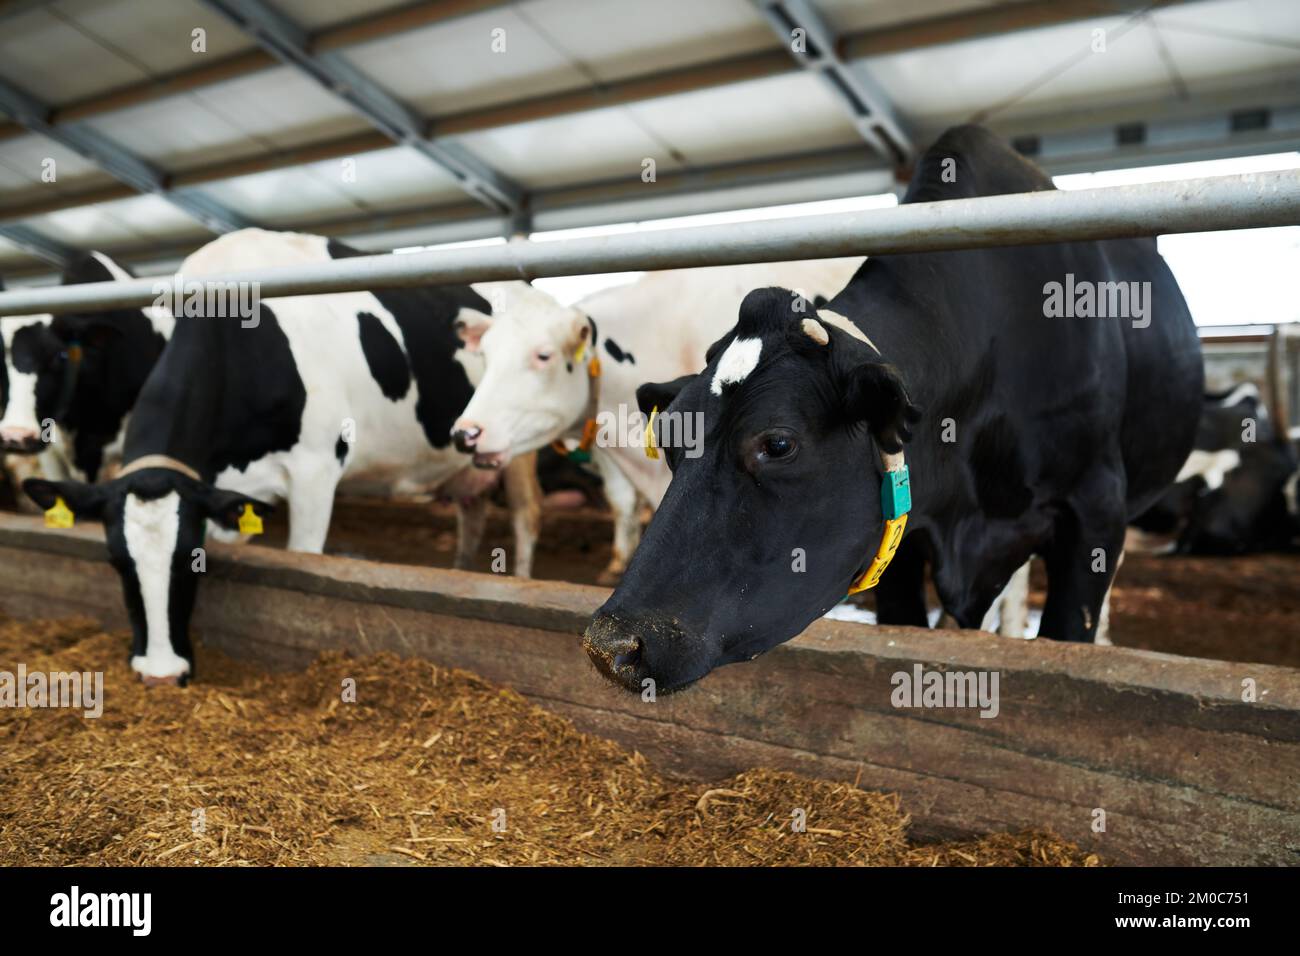 Hilera de vacas lecheras blancas y negras en la cabaña de ganado de una enorme granja ganadera moderna y comiendo forraje especial del alimentador Foto de stock